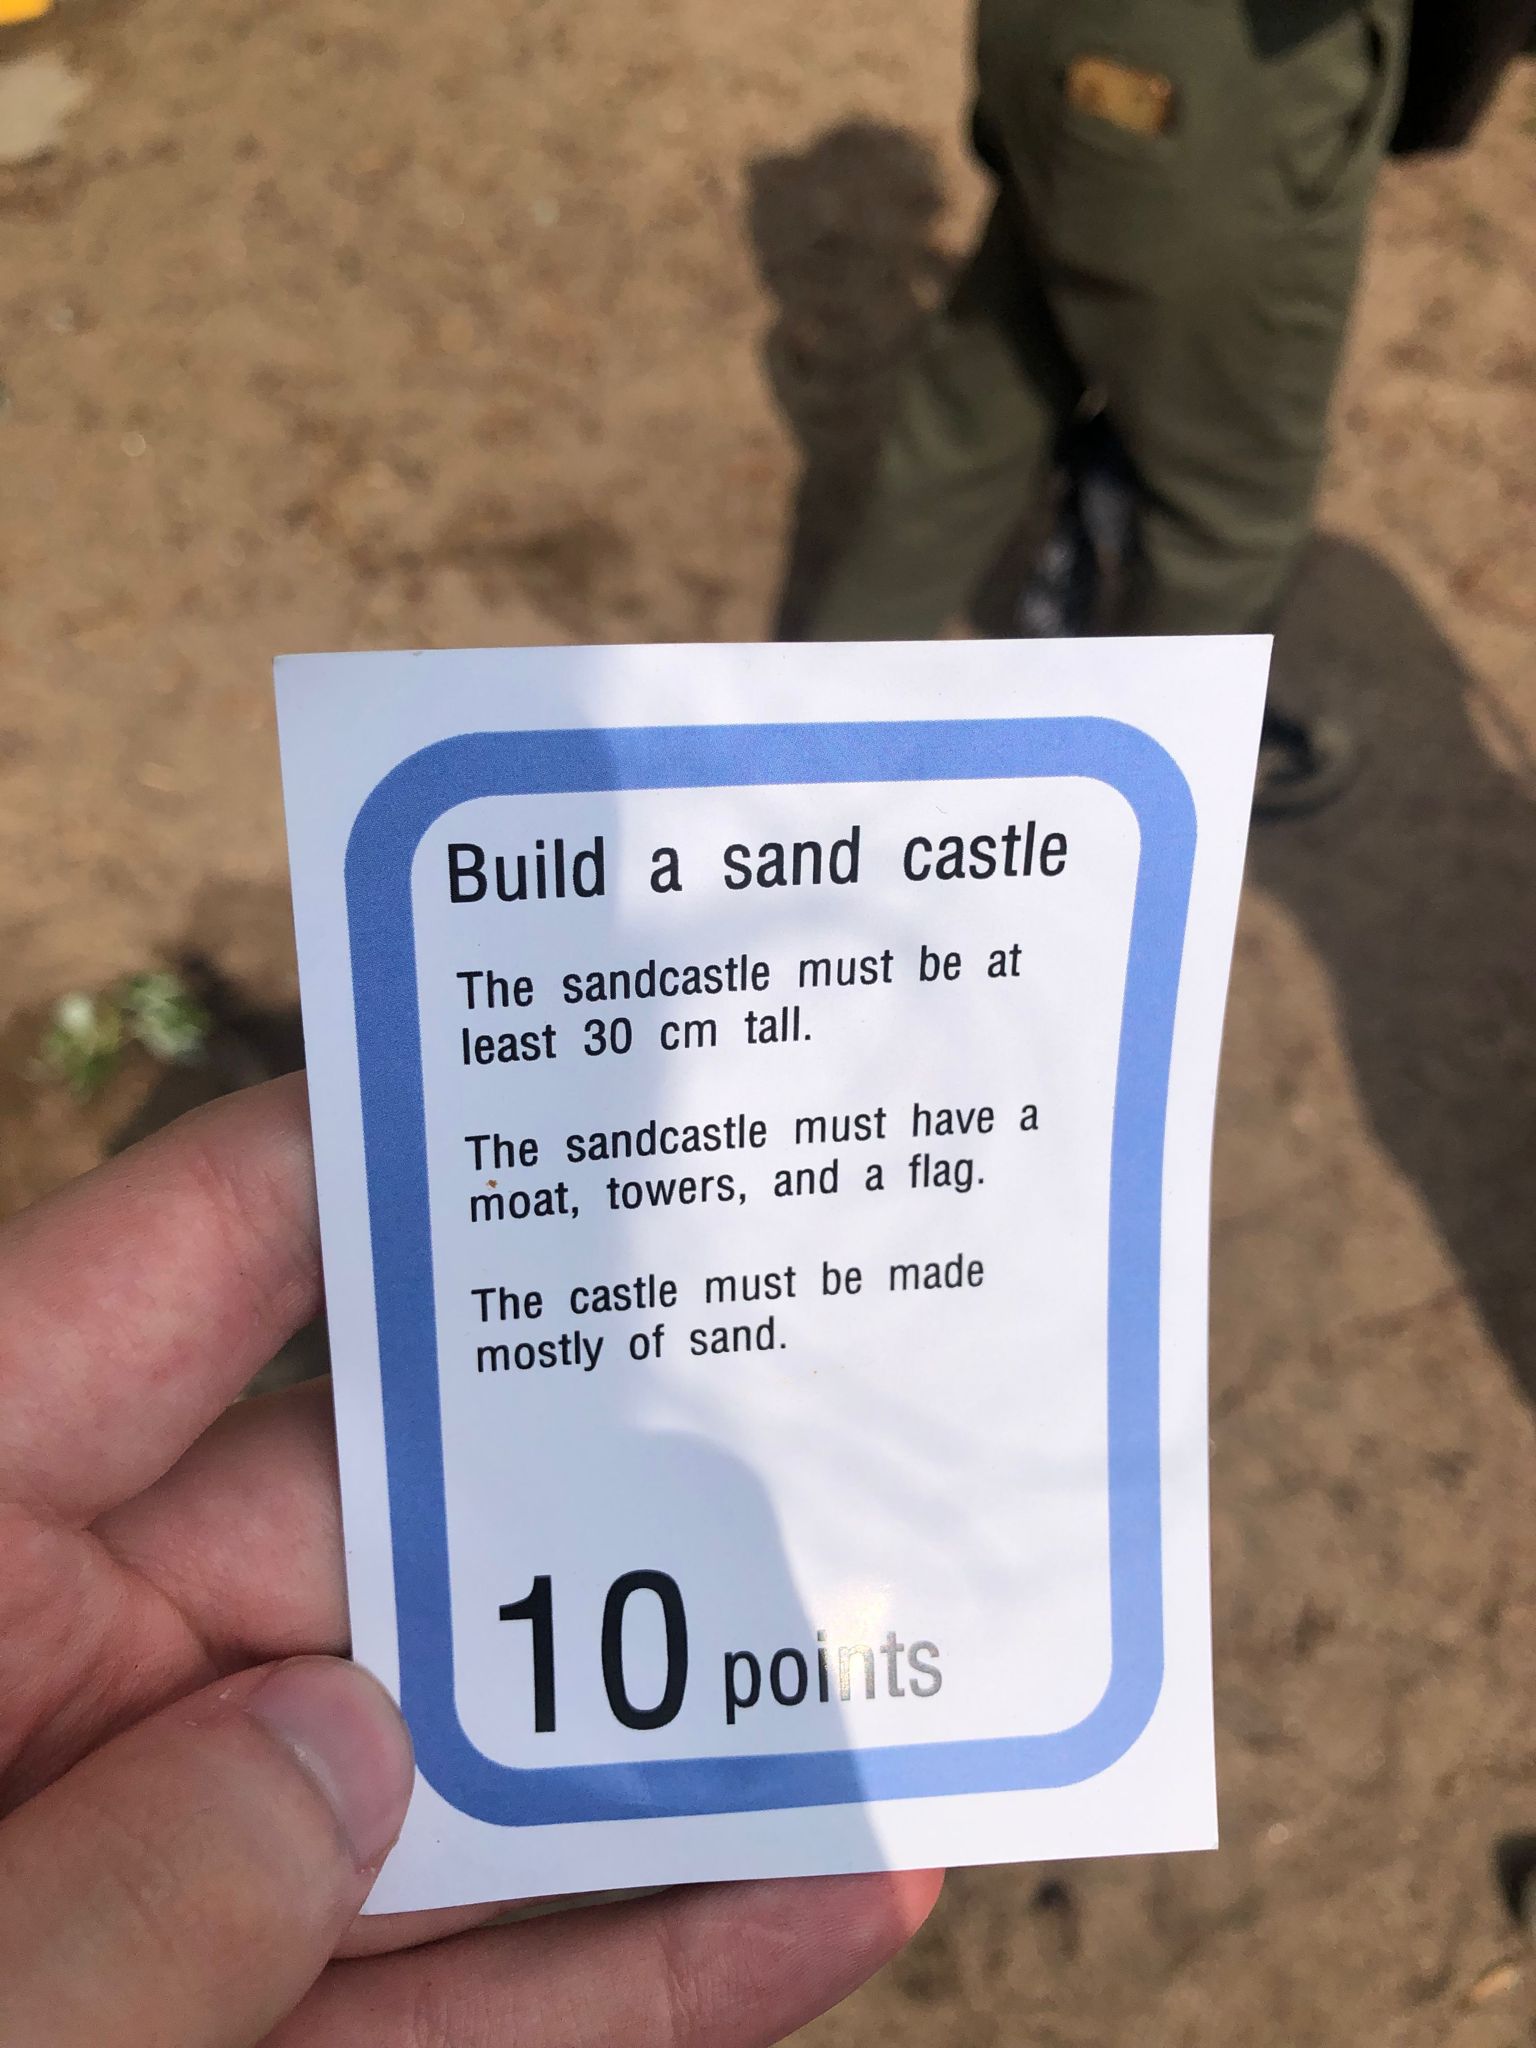 Built a sand castle challenge card.